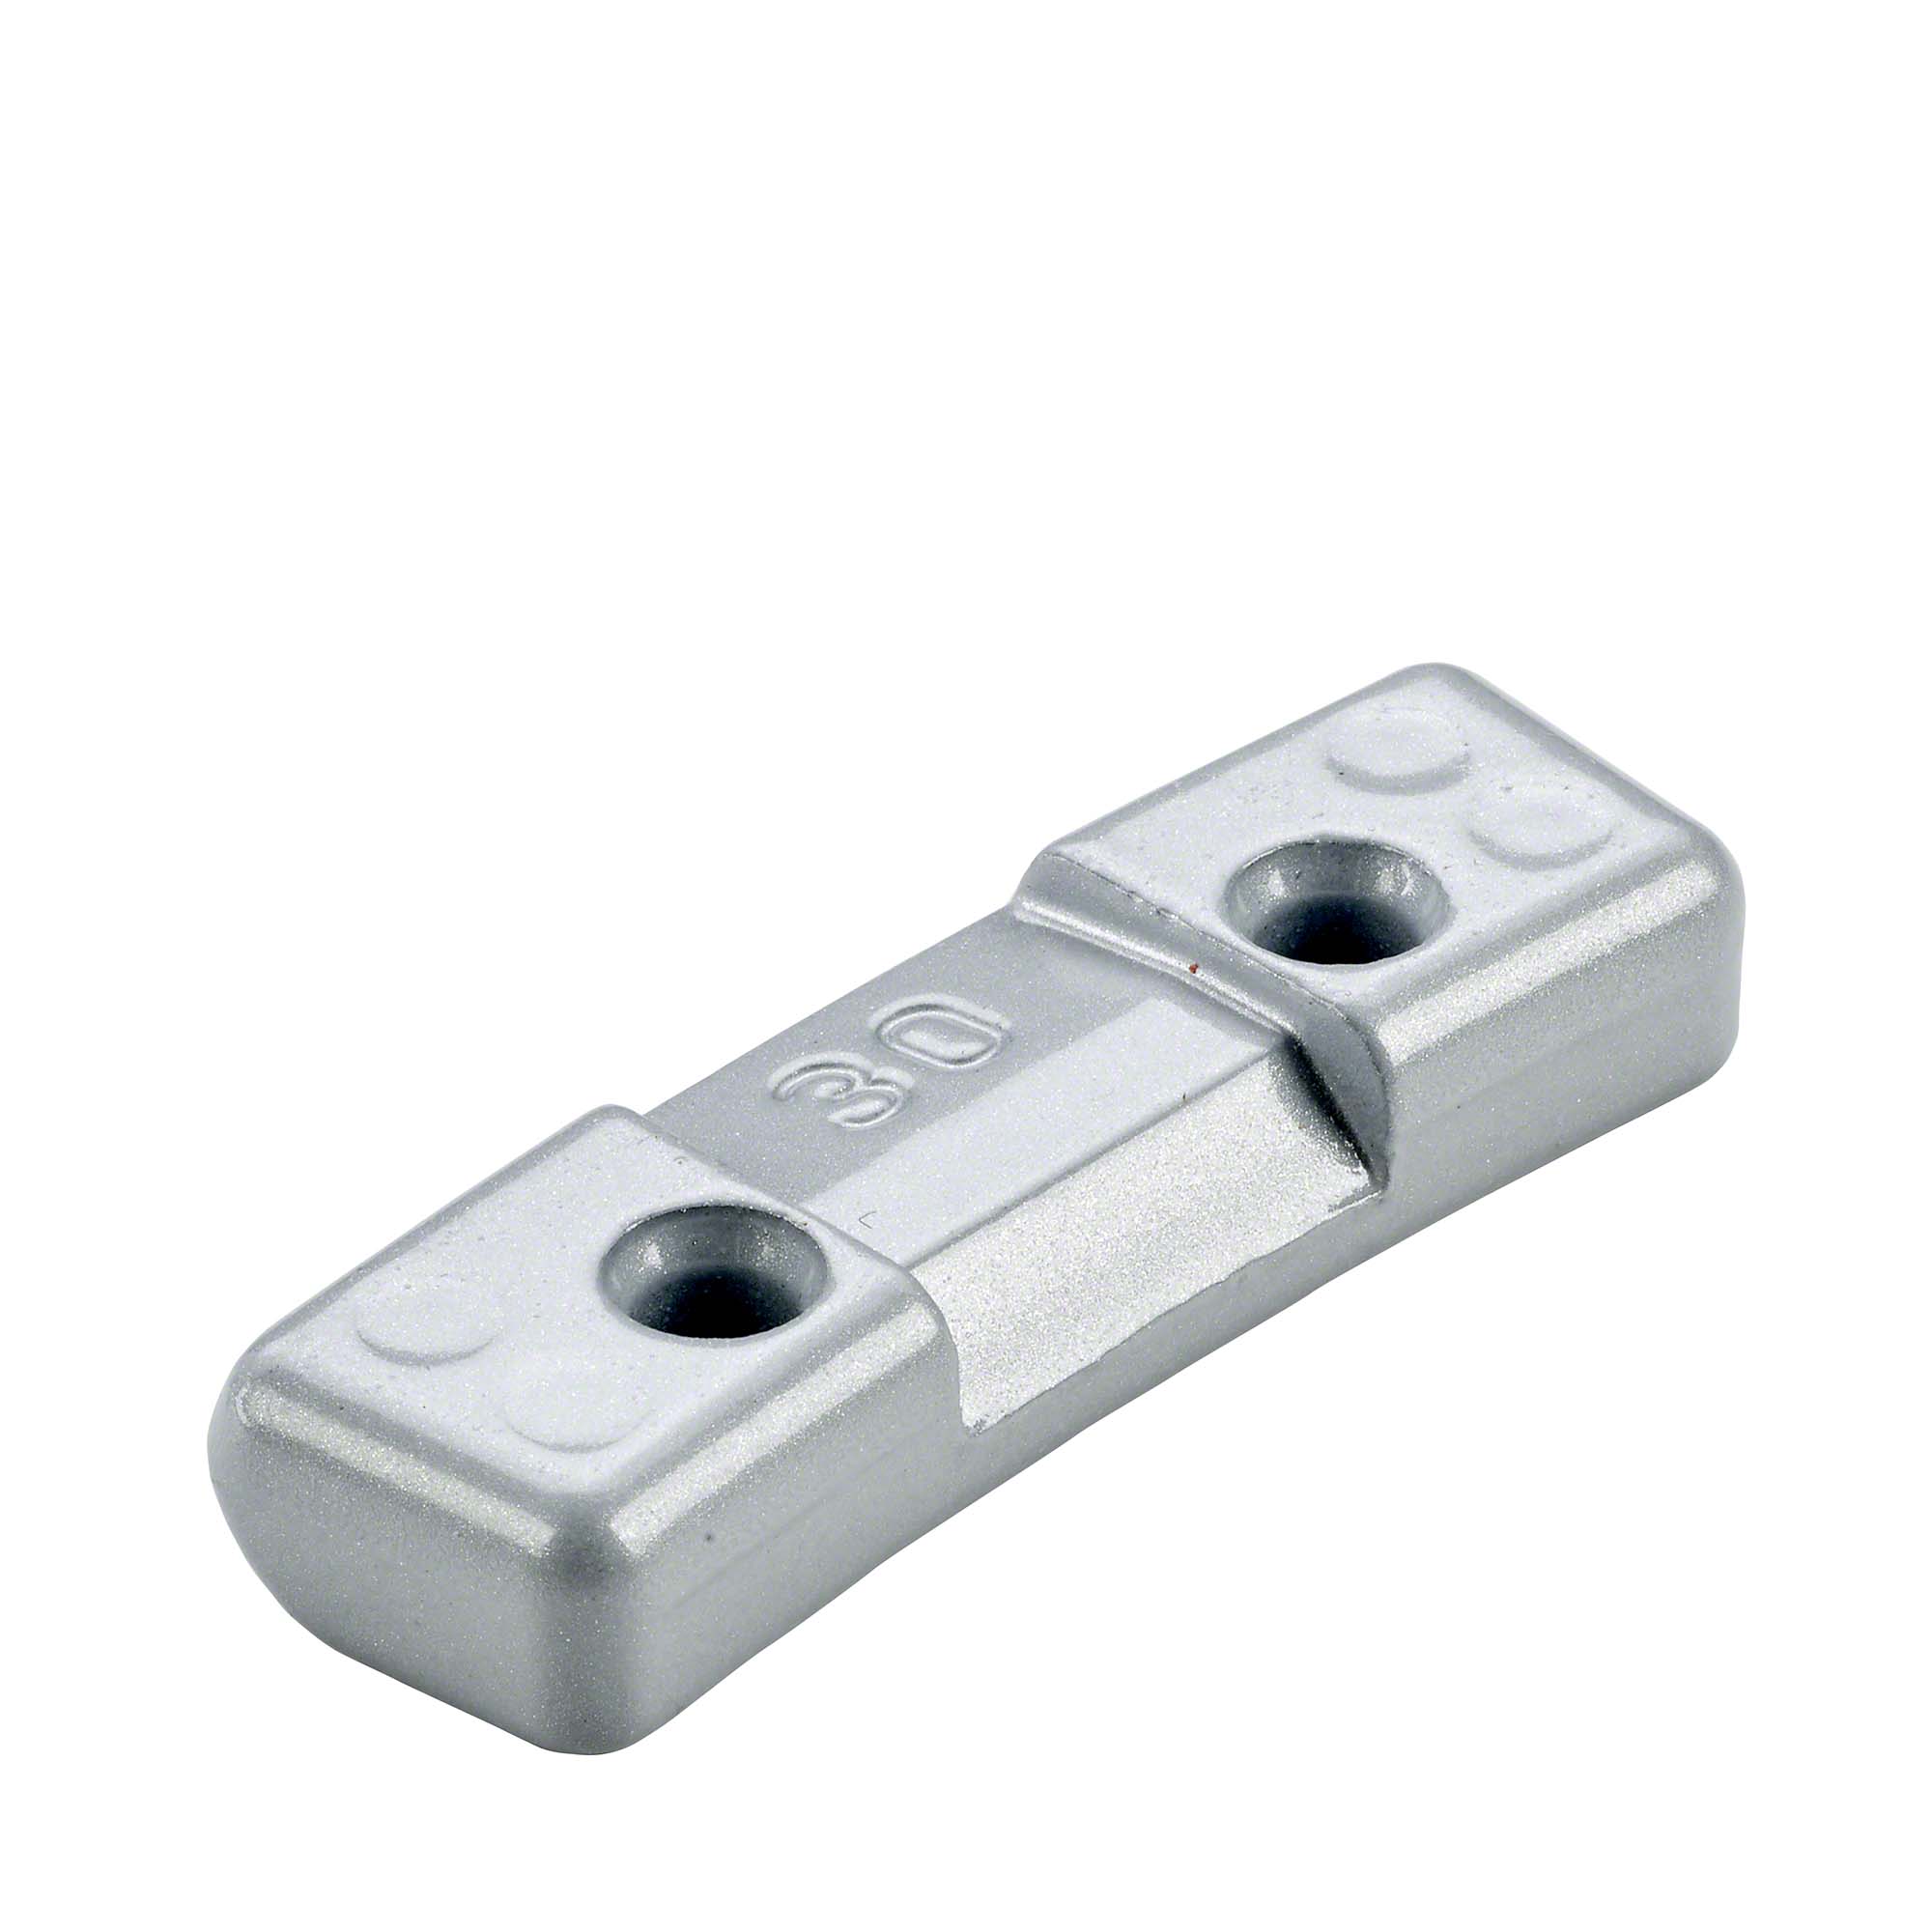 Safety weight - Typ 260, 30 g, zinc, silver